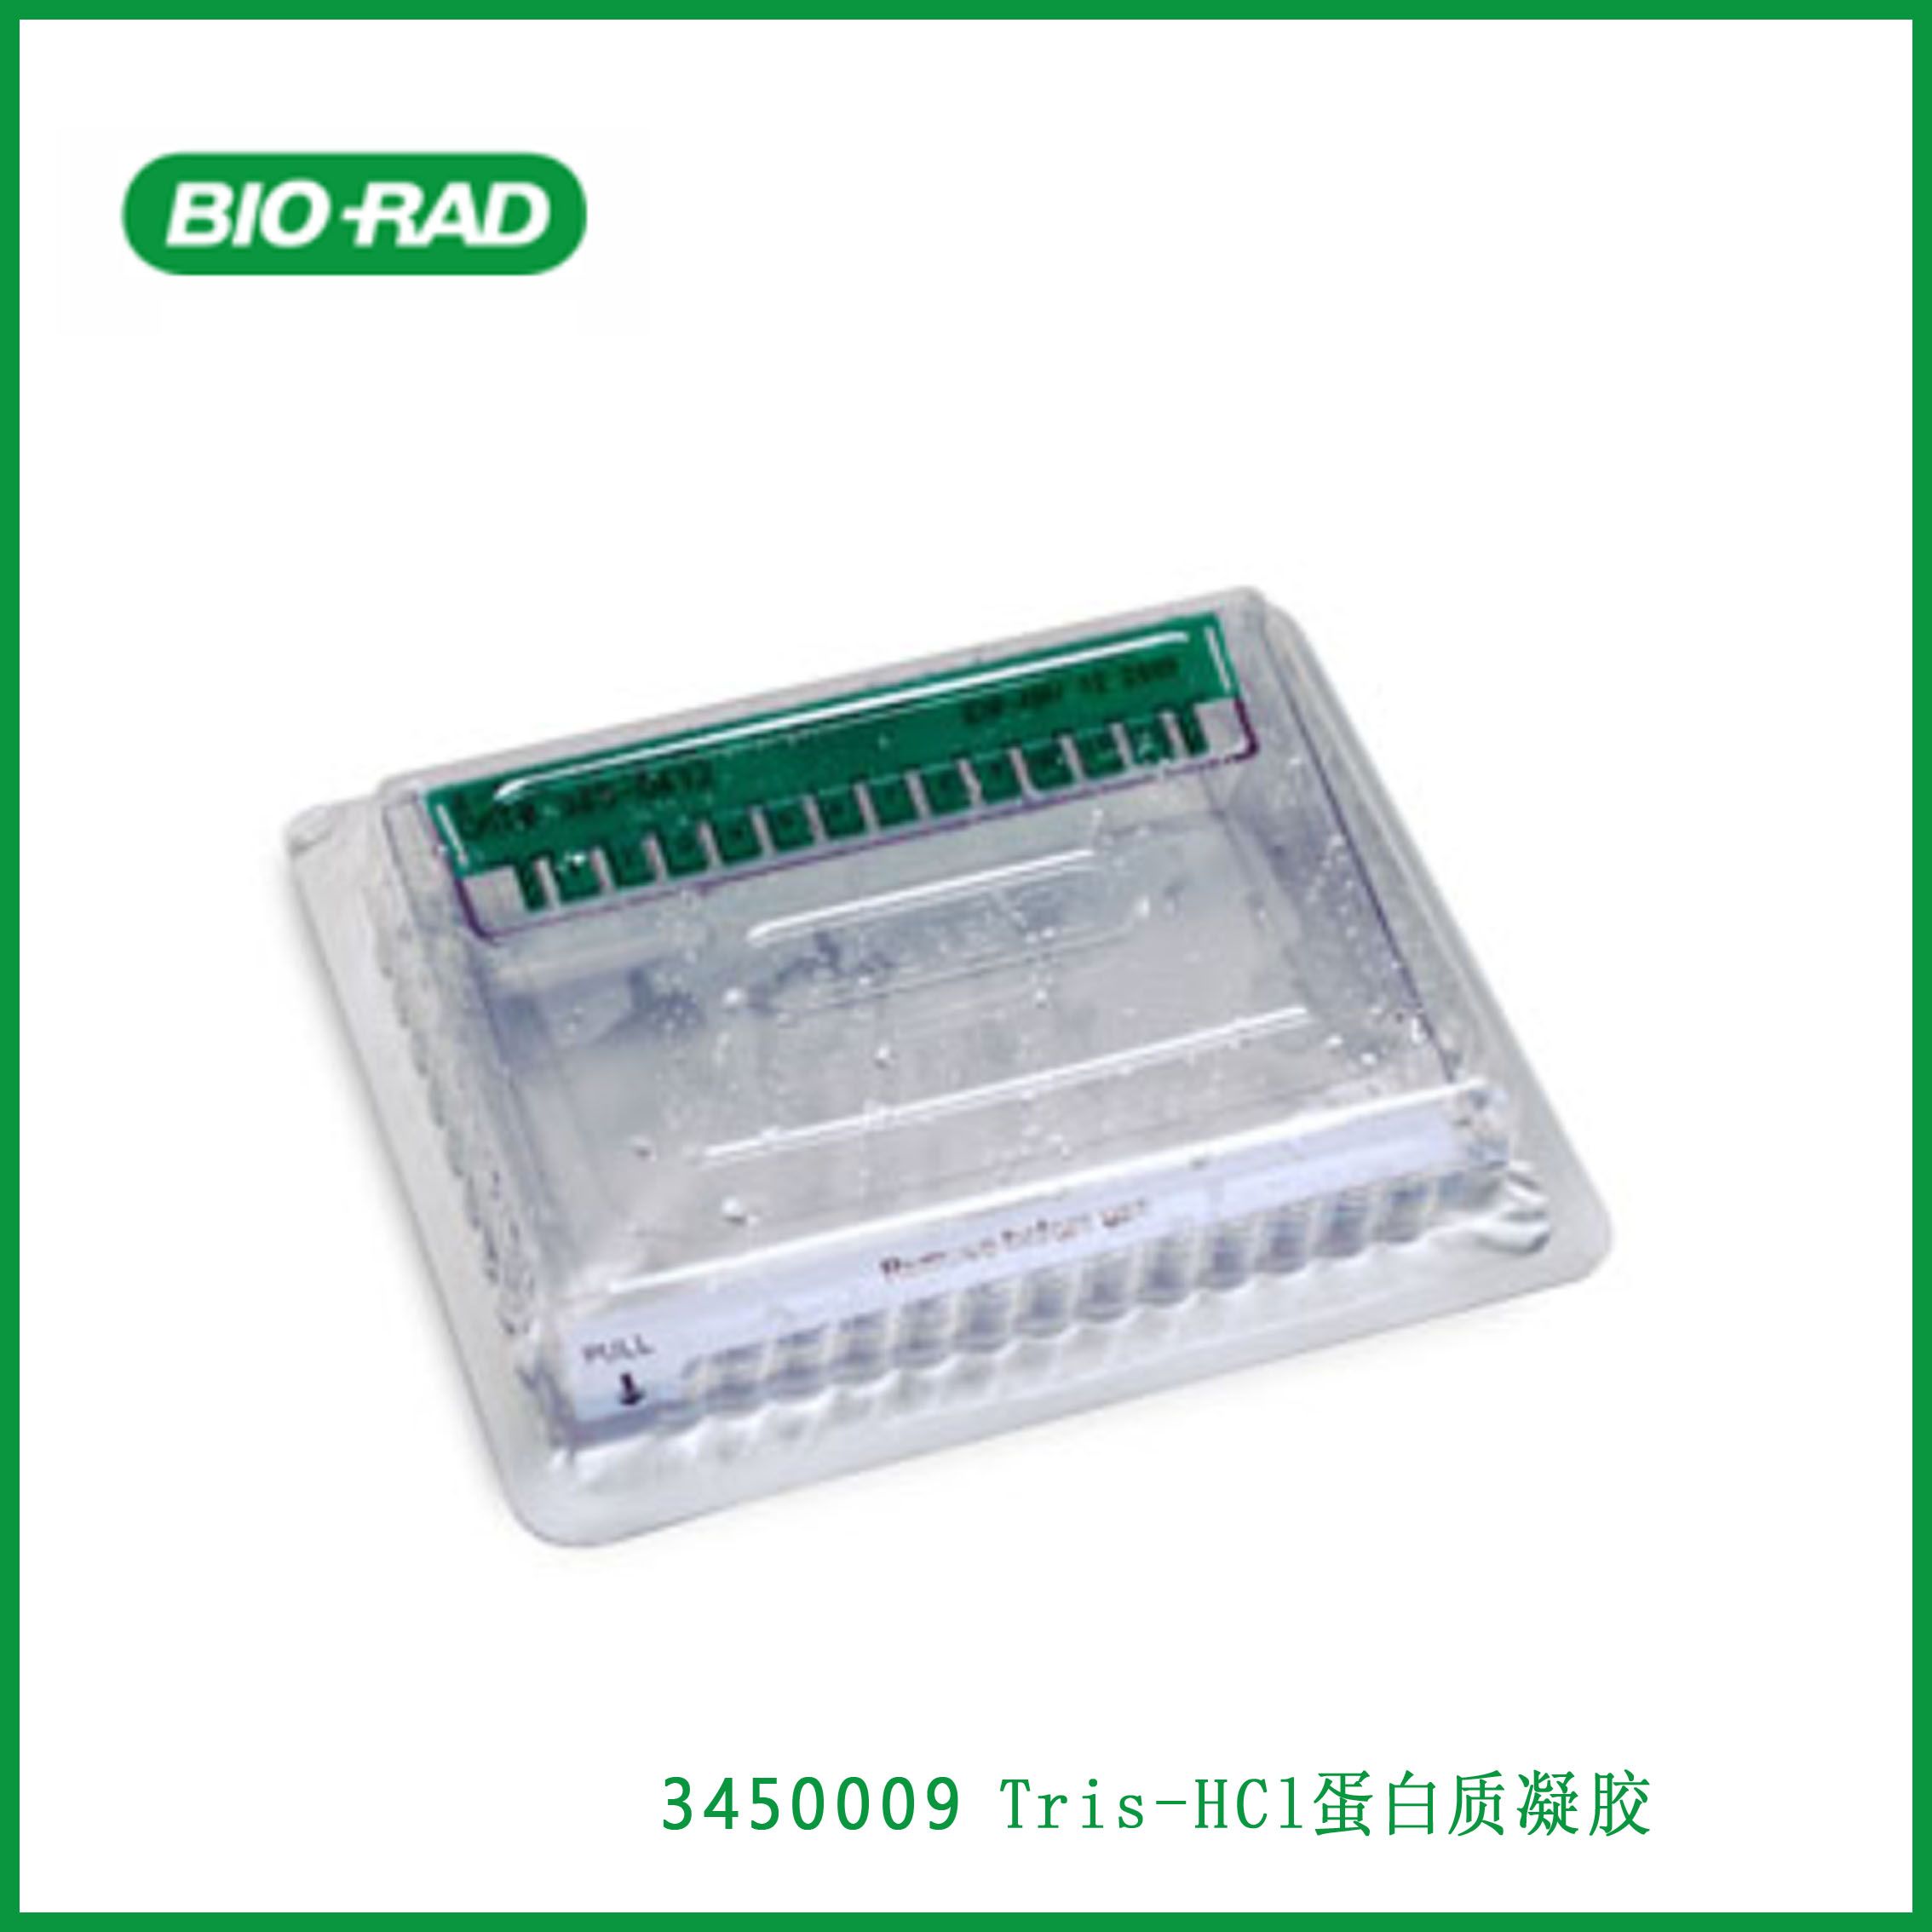 伯乐Bio-Rad3450009 10% Criterion™ Tris-HCl Protein Gel, 12+2 well, 45 µl, 10%标准™ Tris-HCl蛋白质凝胶，12+2孔，45µl,现货